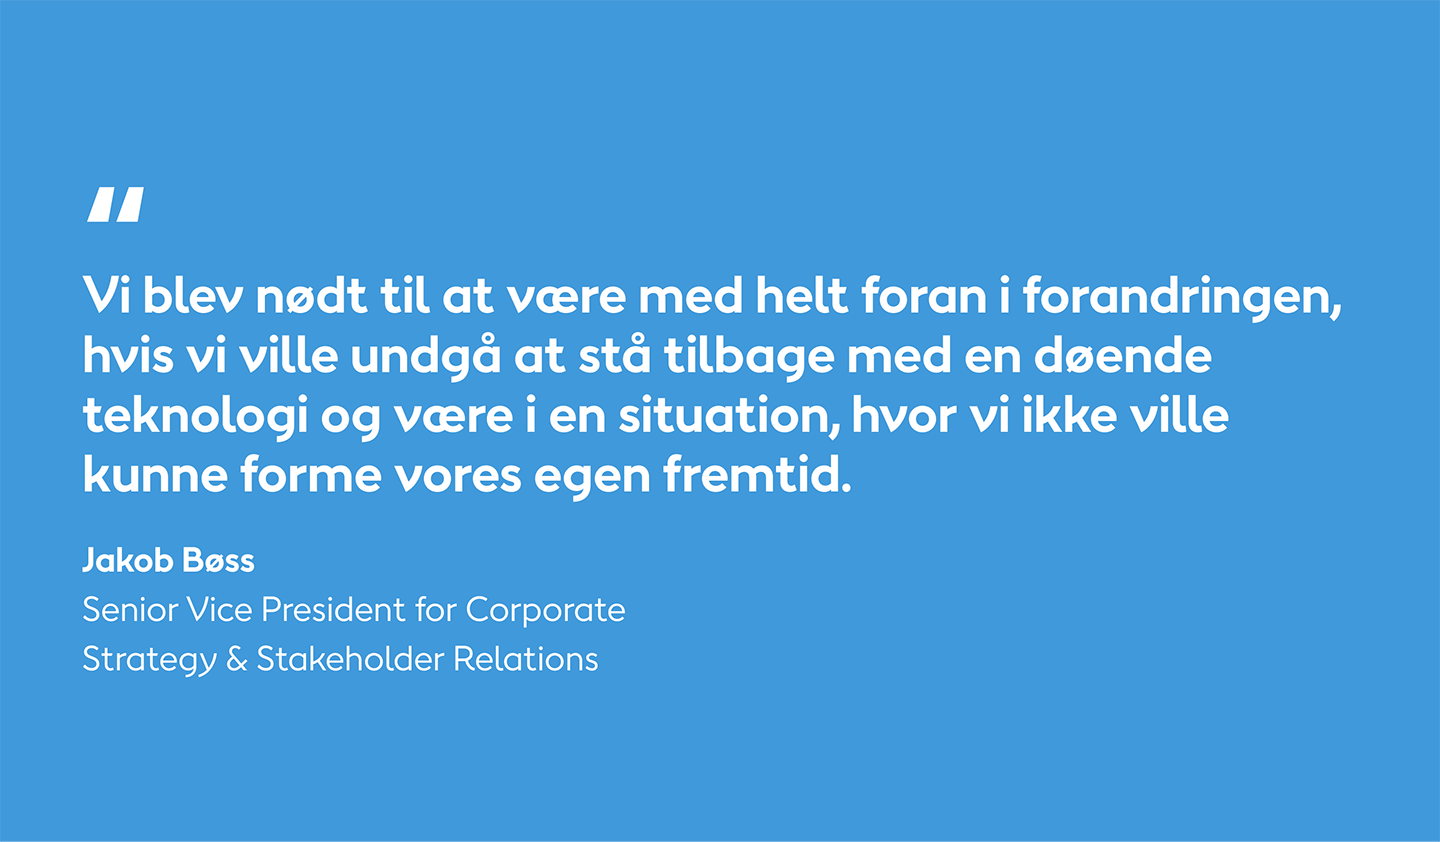 Quote by Henrik Bøss